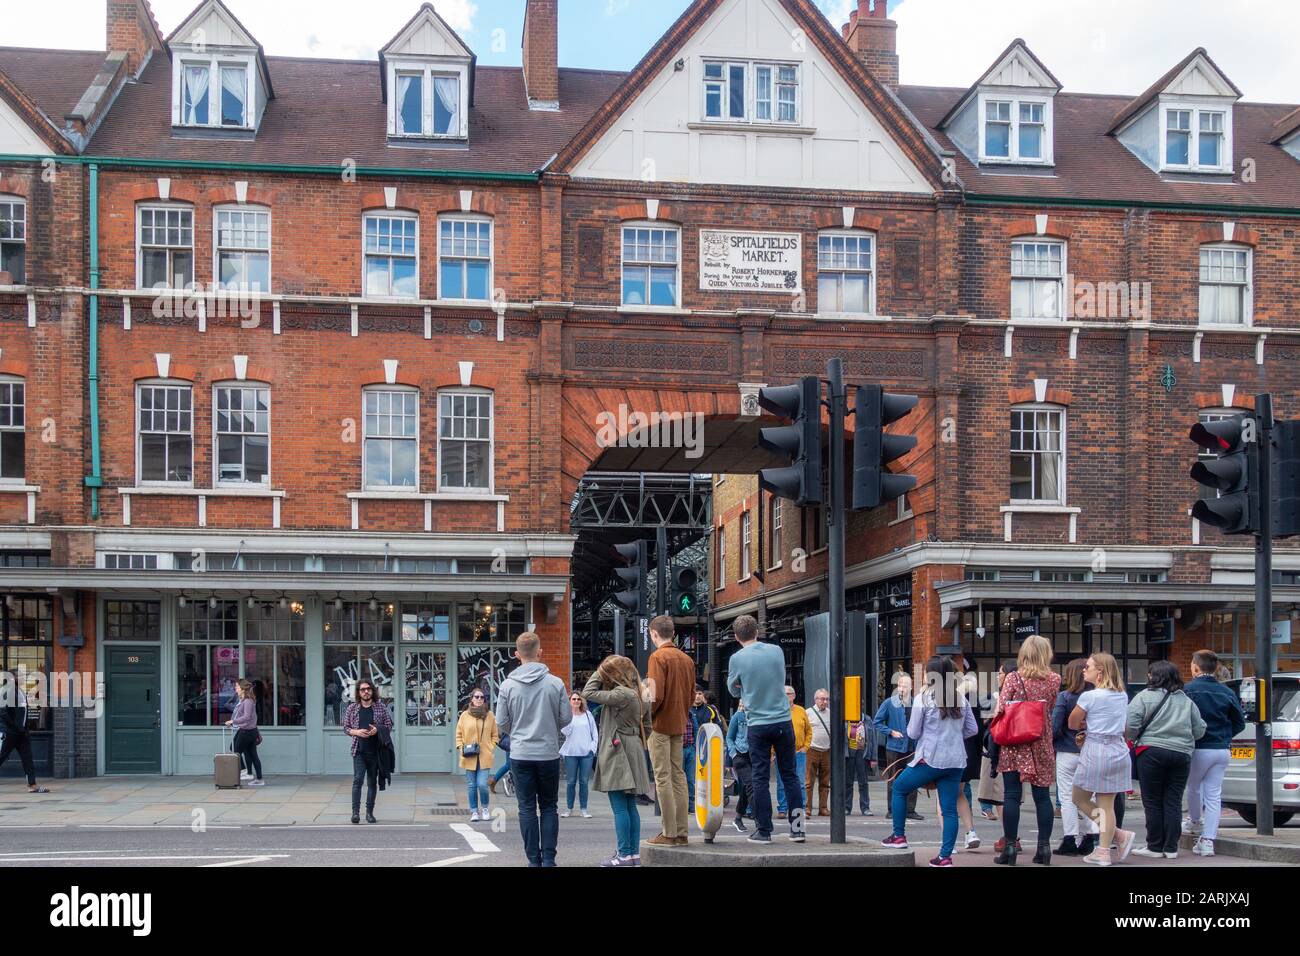 Old Spitalfields Market, Commercial St, Spitalfields, London, Großbritannien. Menschen, die auf die Querung der Straße an einem Fußgängerübergang warten. Stockfoto